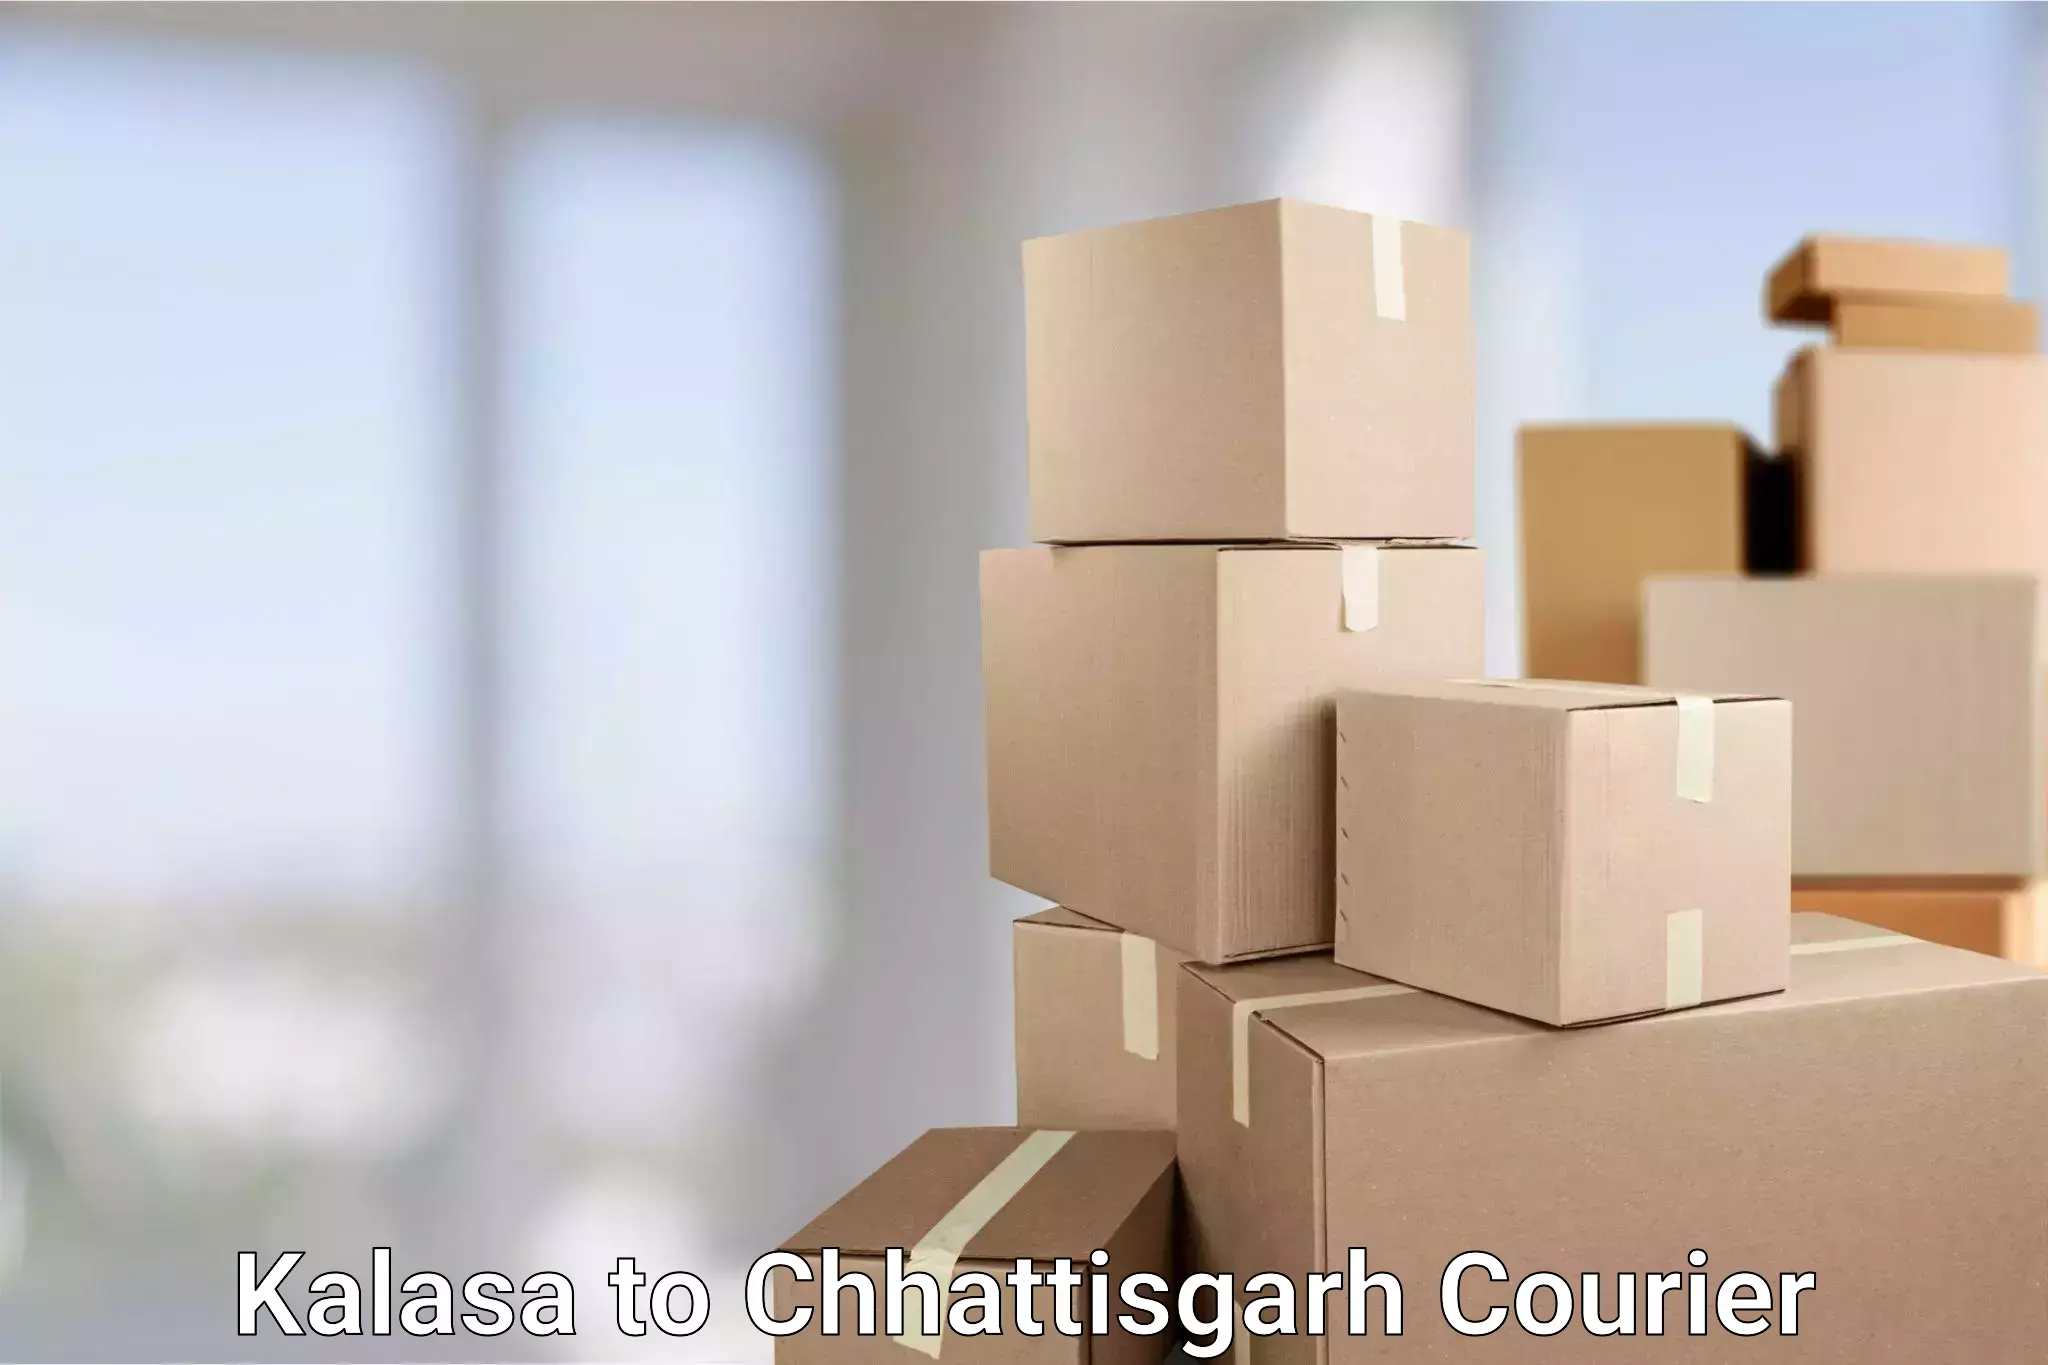 Customized shipping options Kalasa to Chhattisgarh